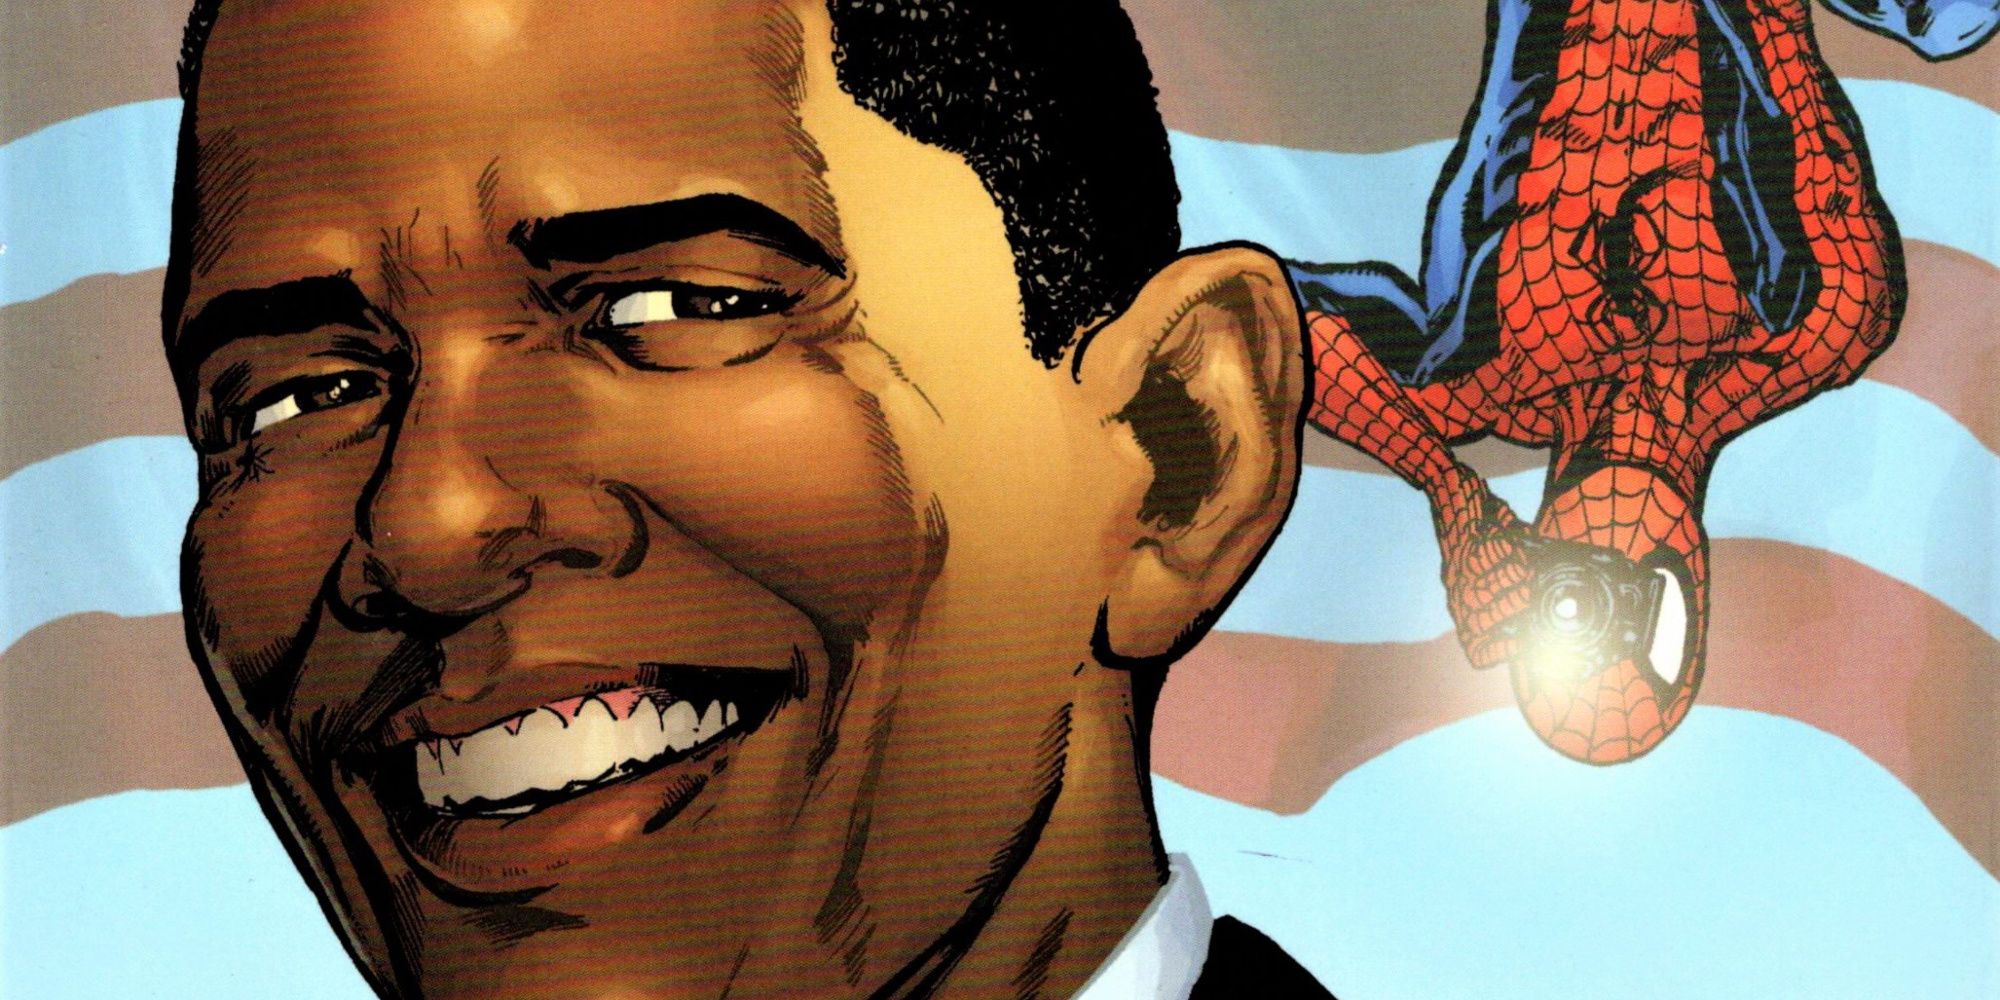 Spider-Man and Barack Obama teamed up